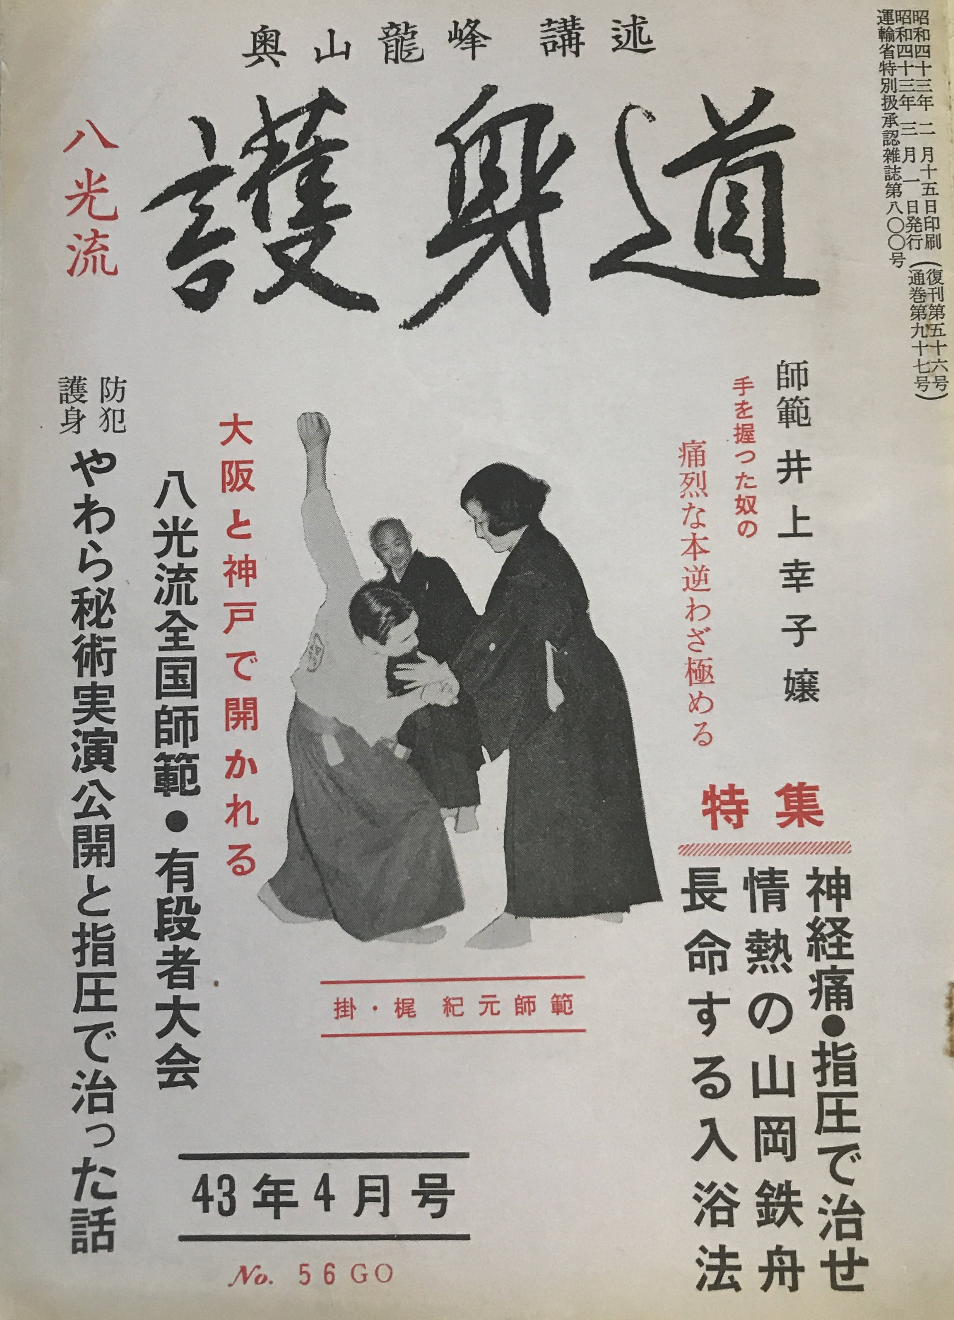 Hakko Ryu Jujutsu Magazine #56 April 1968 (Preowned) - Budovideos Inc